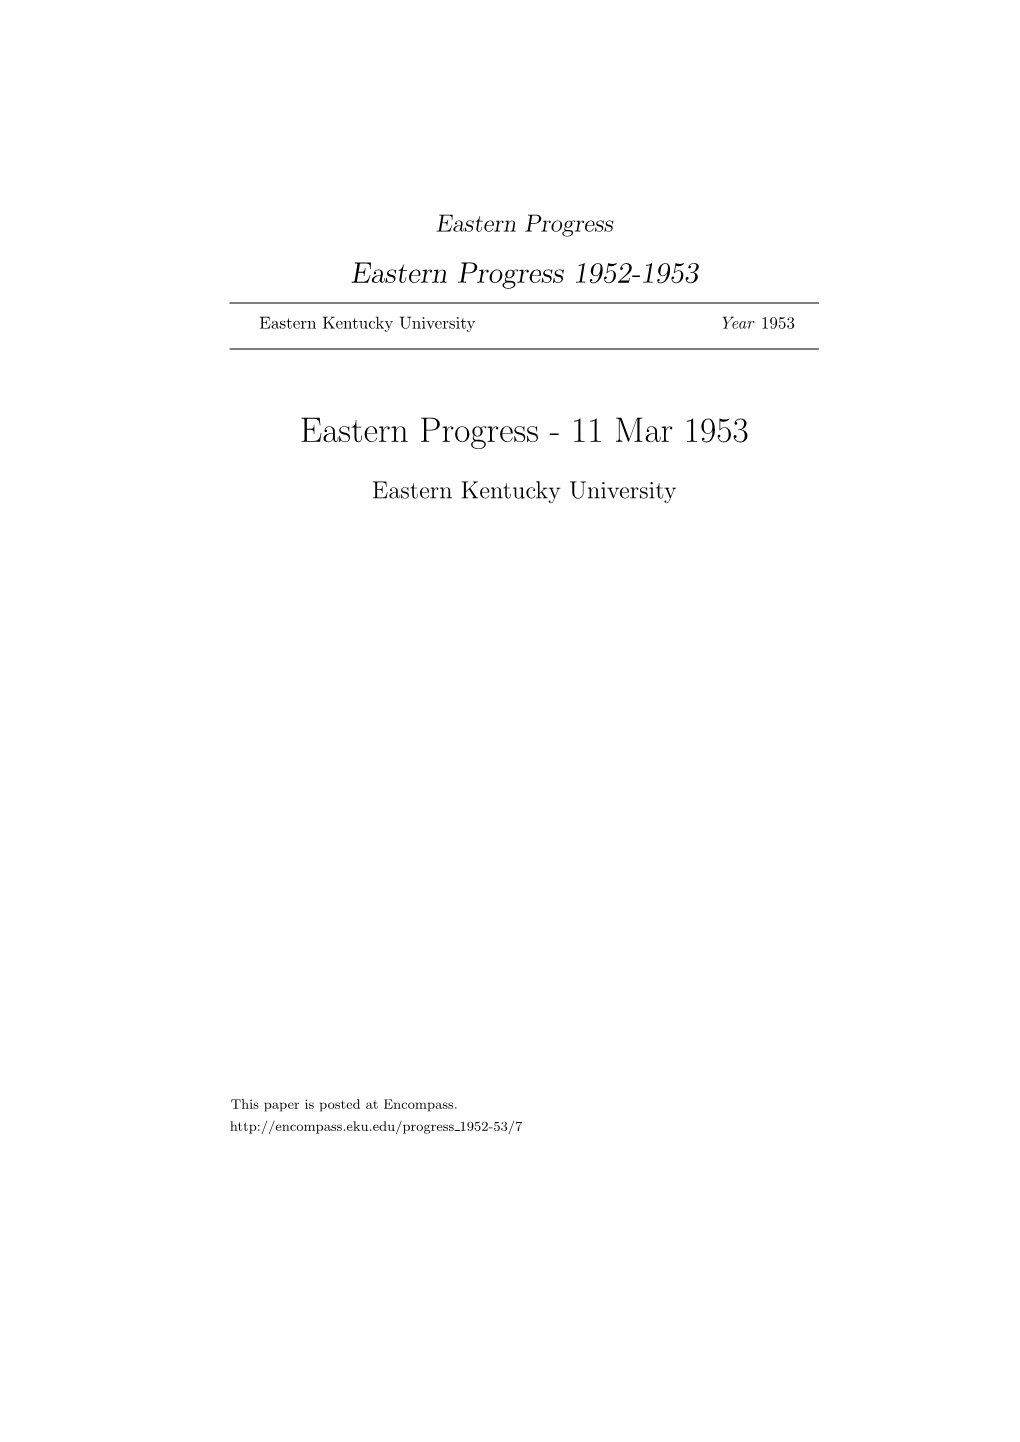 Eastern Progress Eastern Progress 1952-1953